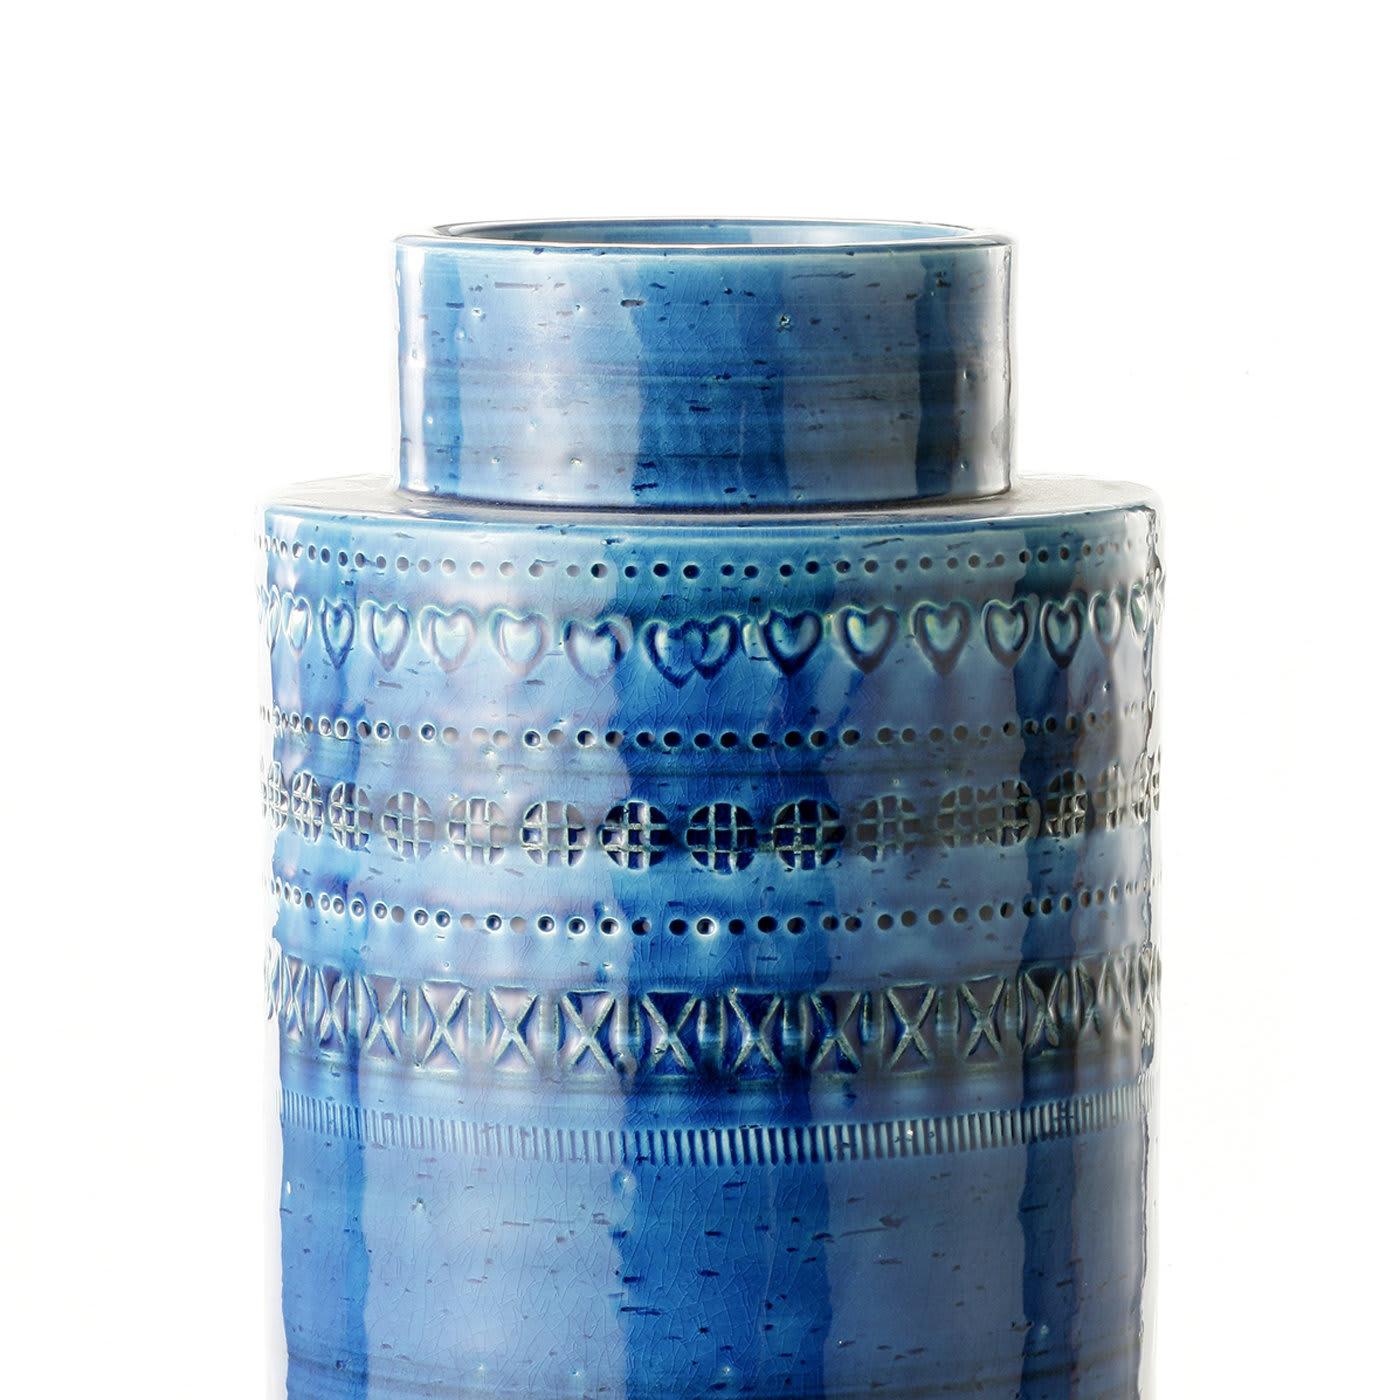 Ce petit vase exquis est en argile blanche avec une finition turquoise saisissante. Sa forme rectangulaire, avec une base et un sommet plus petits, évoque la forme d'un moulinet et présente une série de sculptures géométriques parallèles qui courent